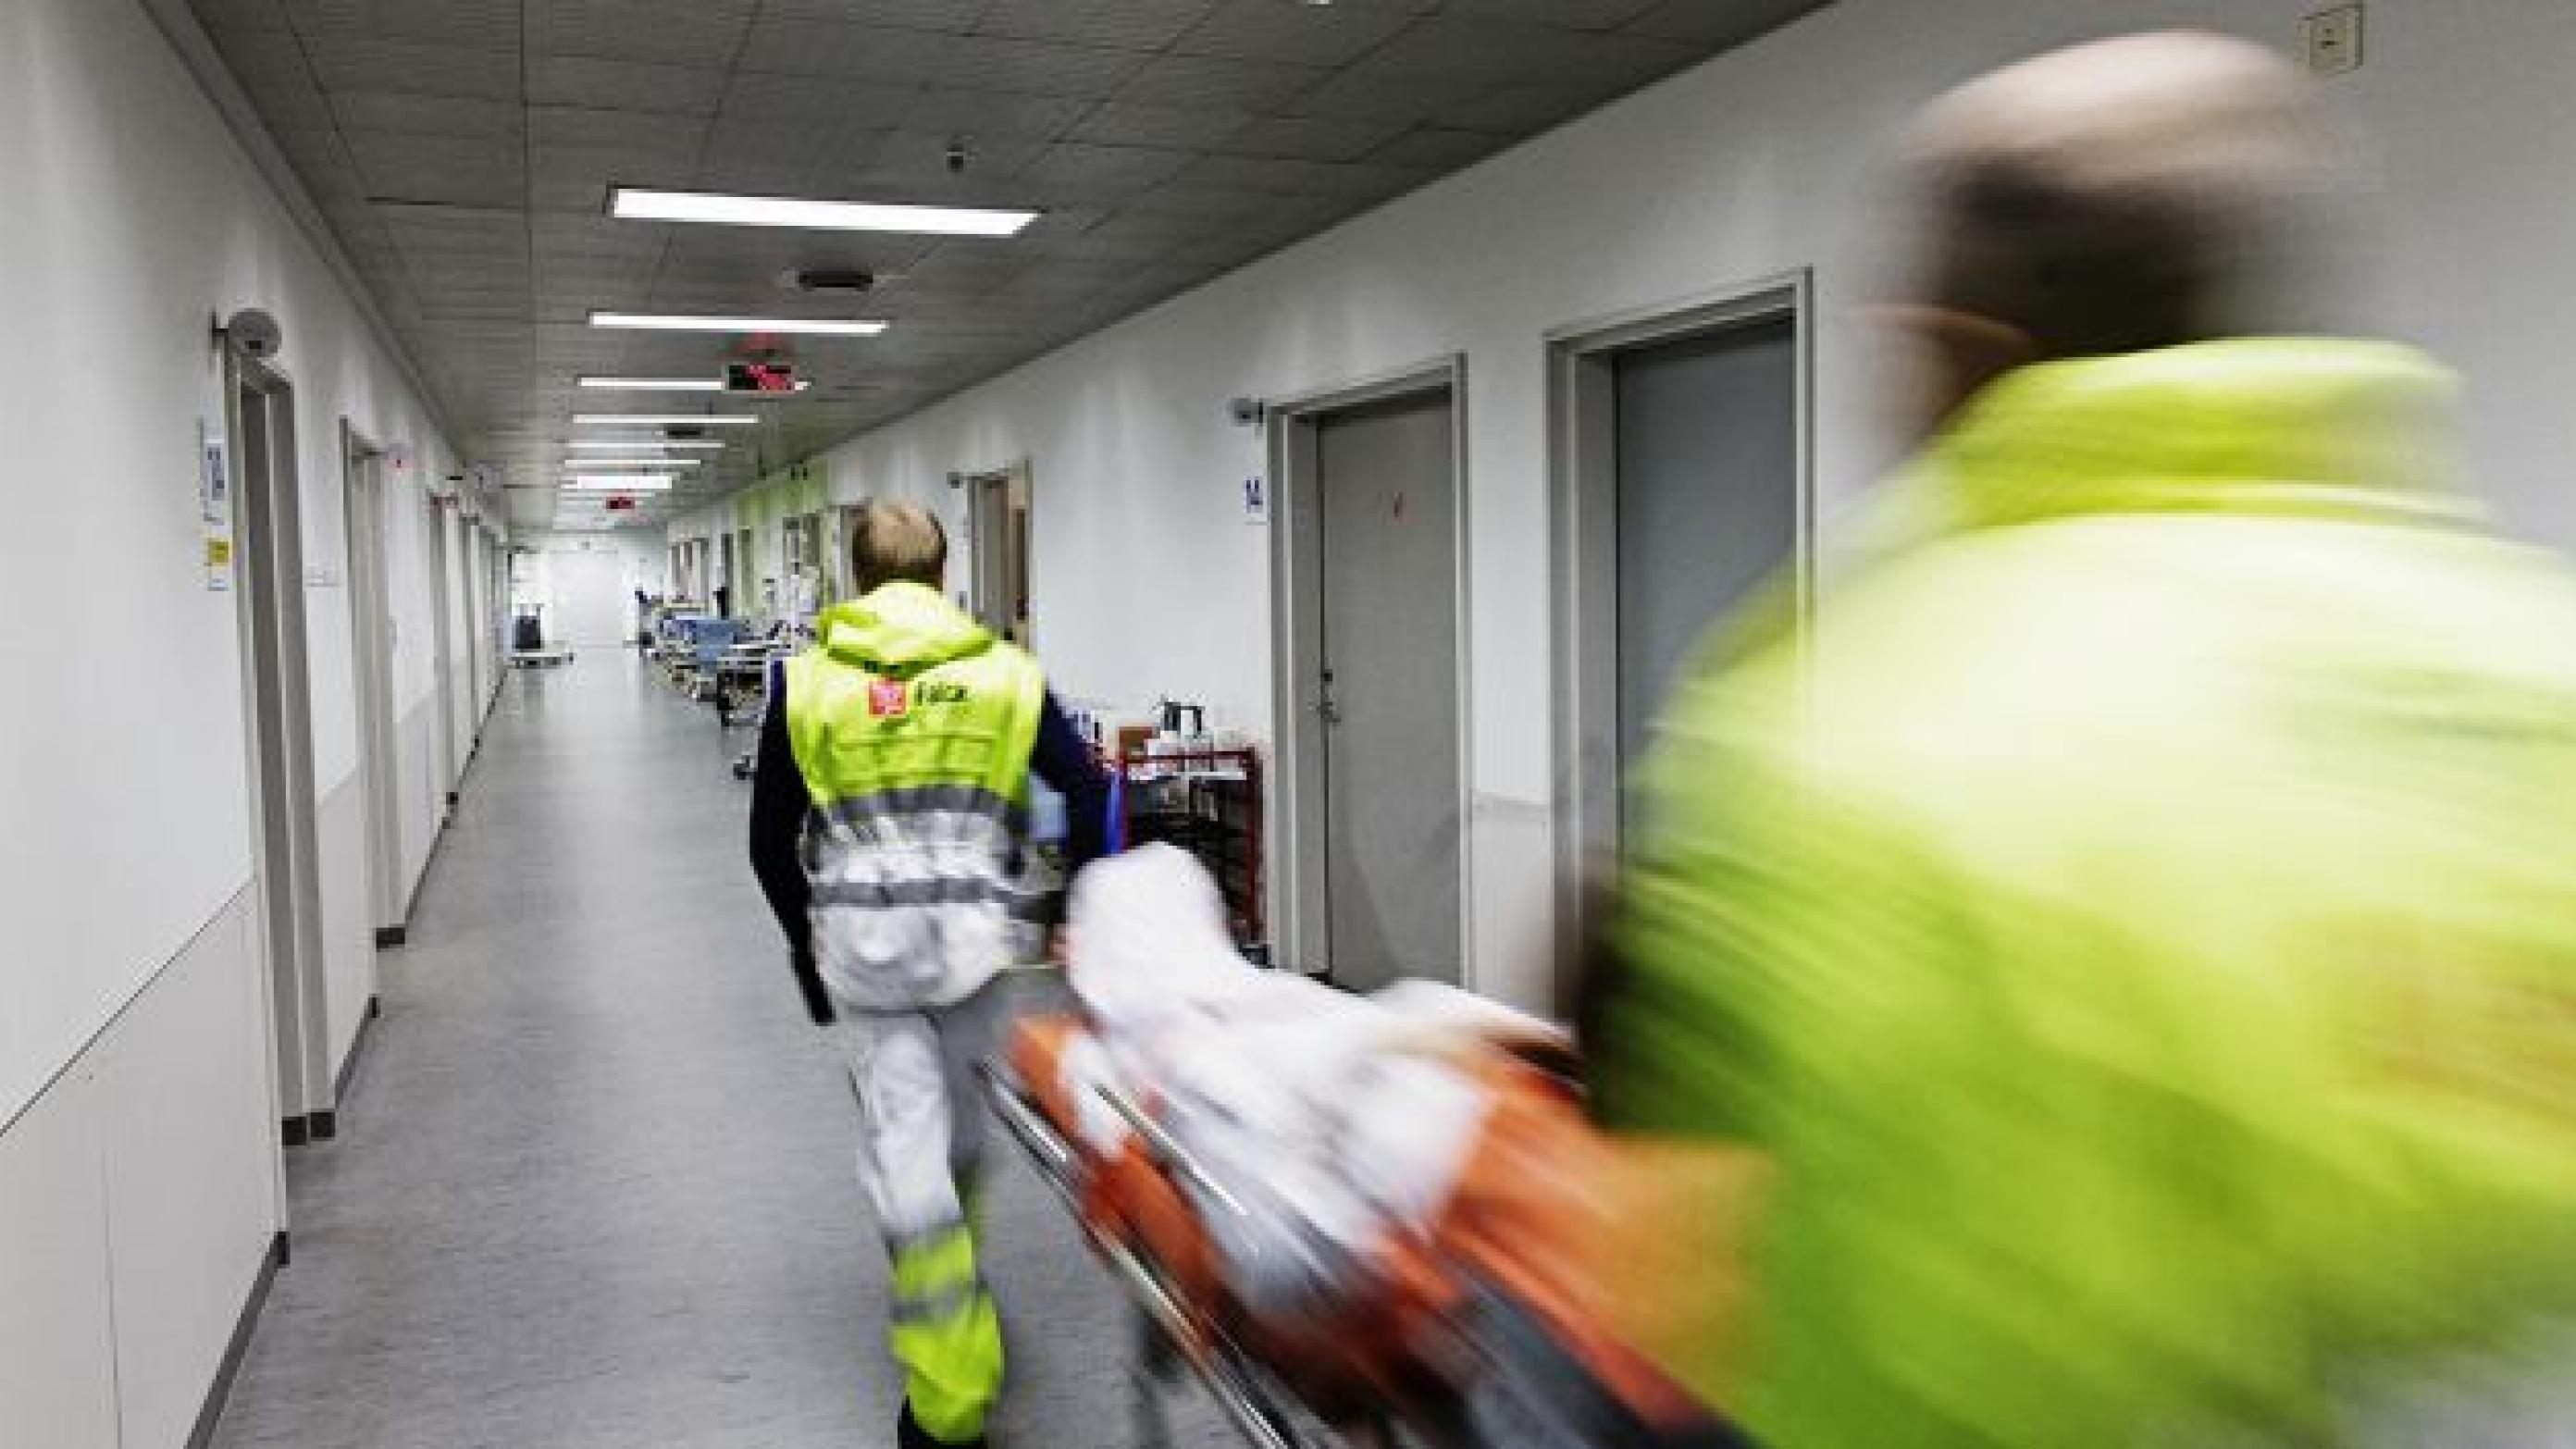  Travlhed på Børneafdelingen på Hvidovre Hospital var medvirkende til et dødsfald for en to-årig pige. Fotograf Ulrik Jantzen